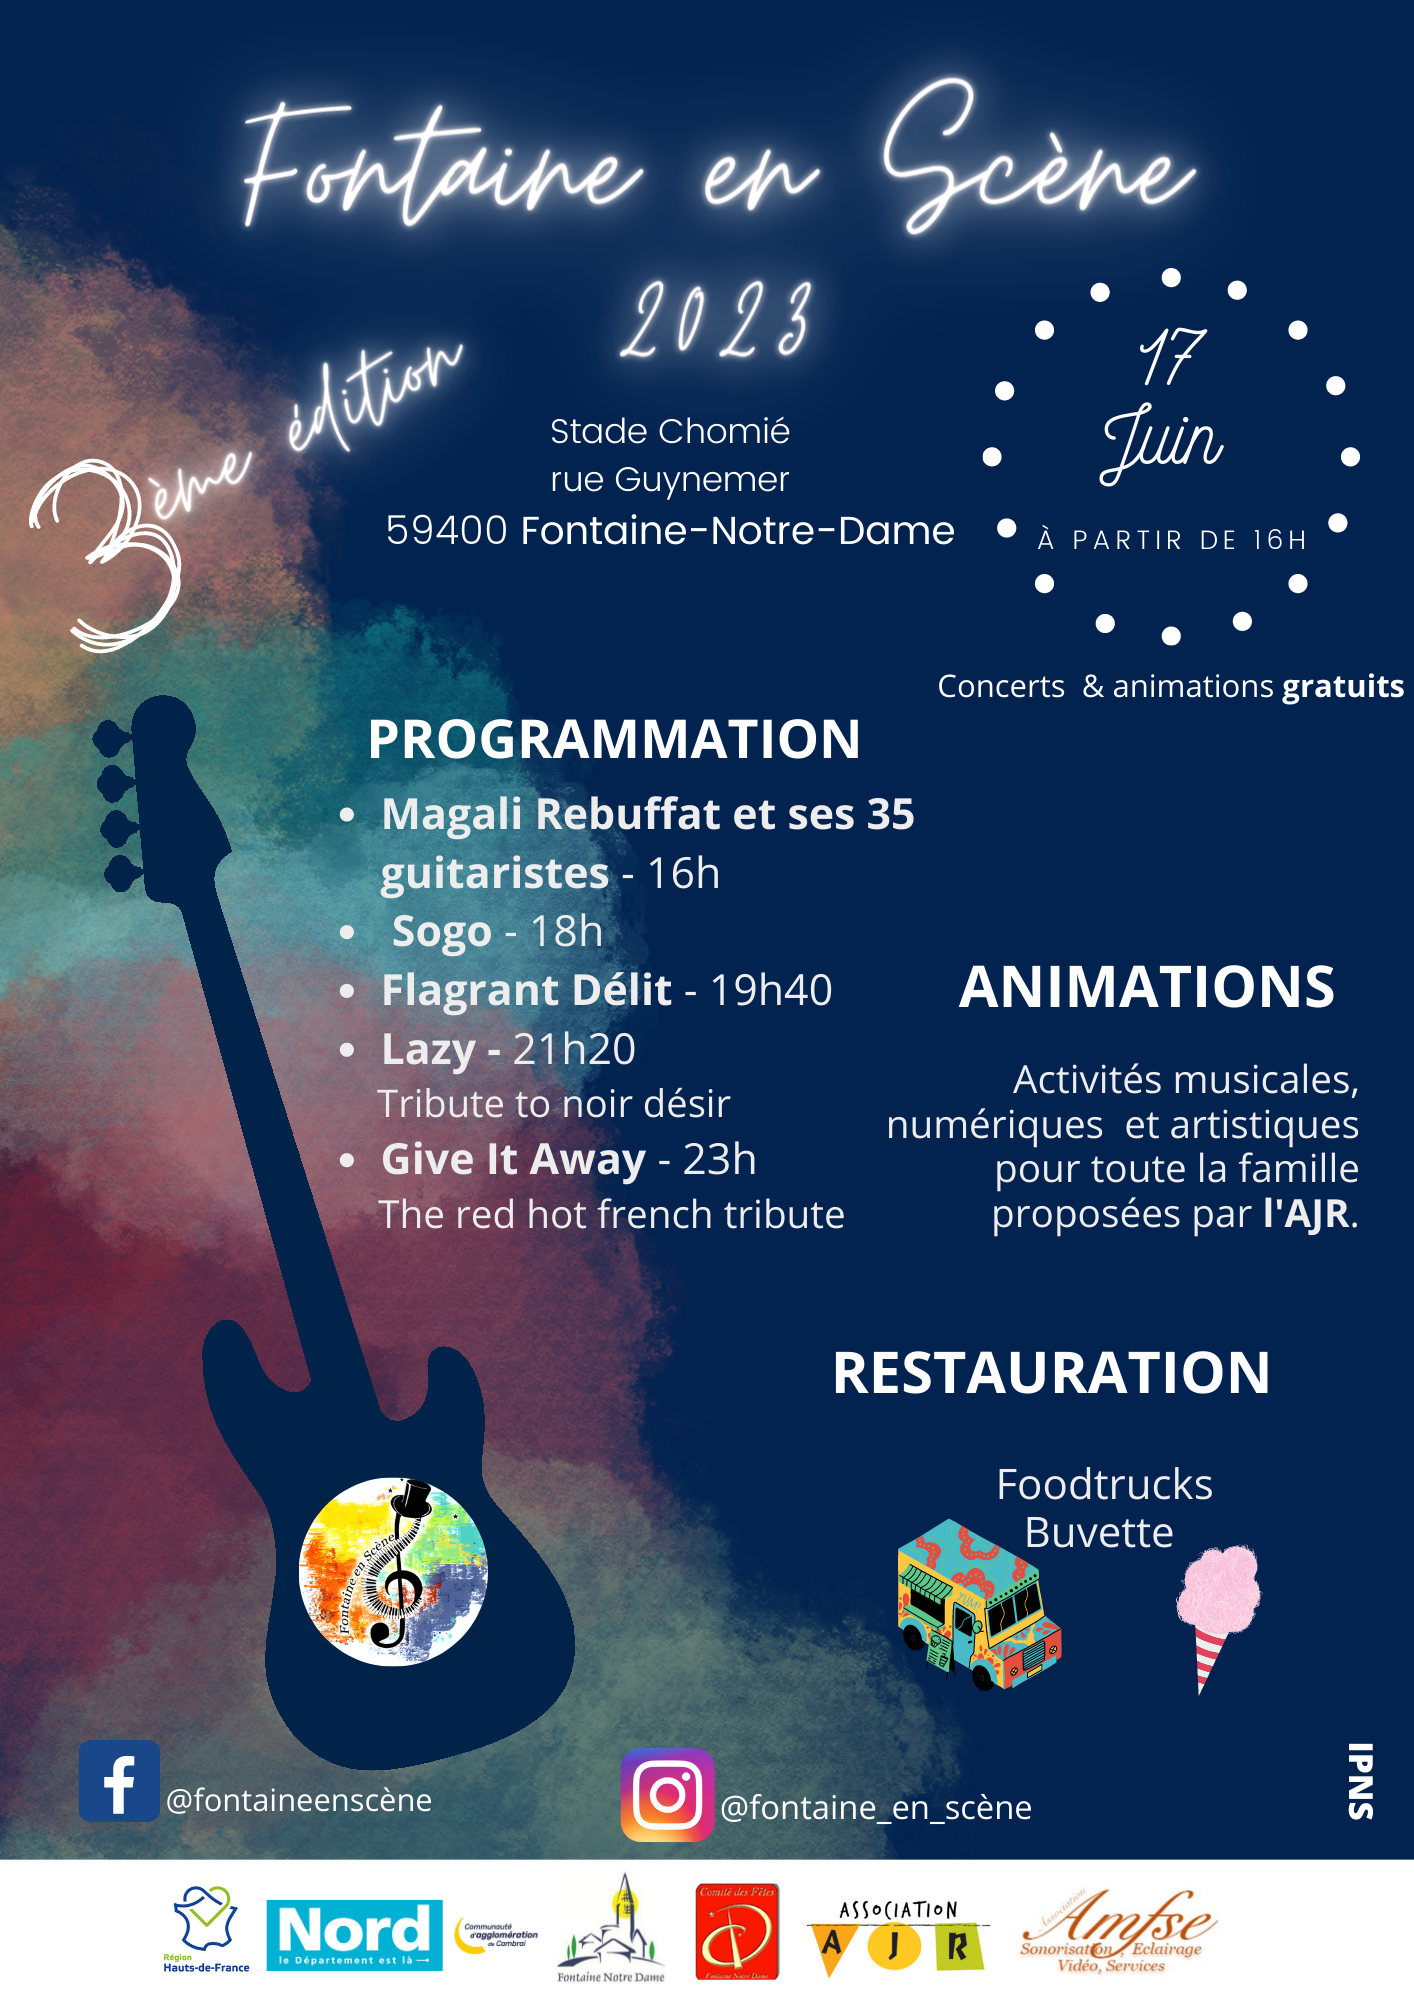 Festival de musique Fontaine en Scène le samedi 17 juin à Fontaine Notre Dame dès 16h00.